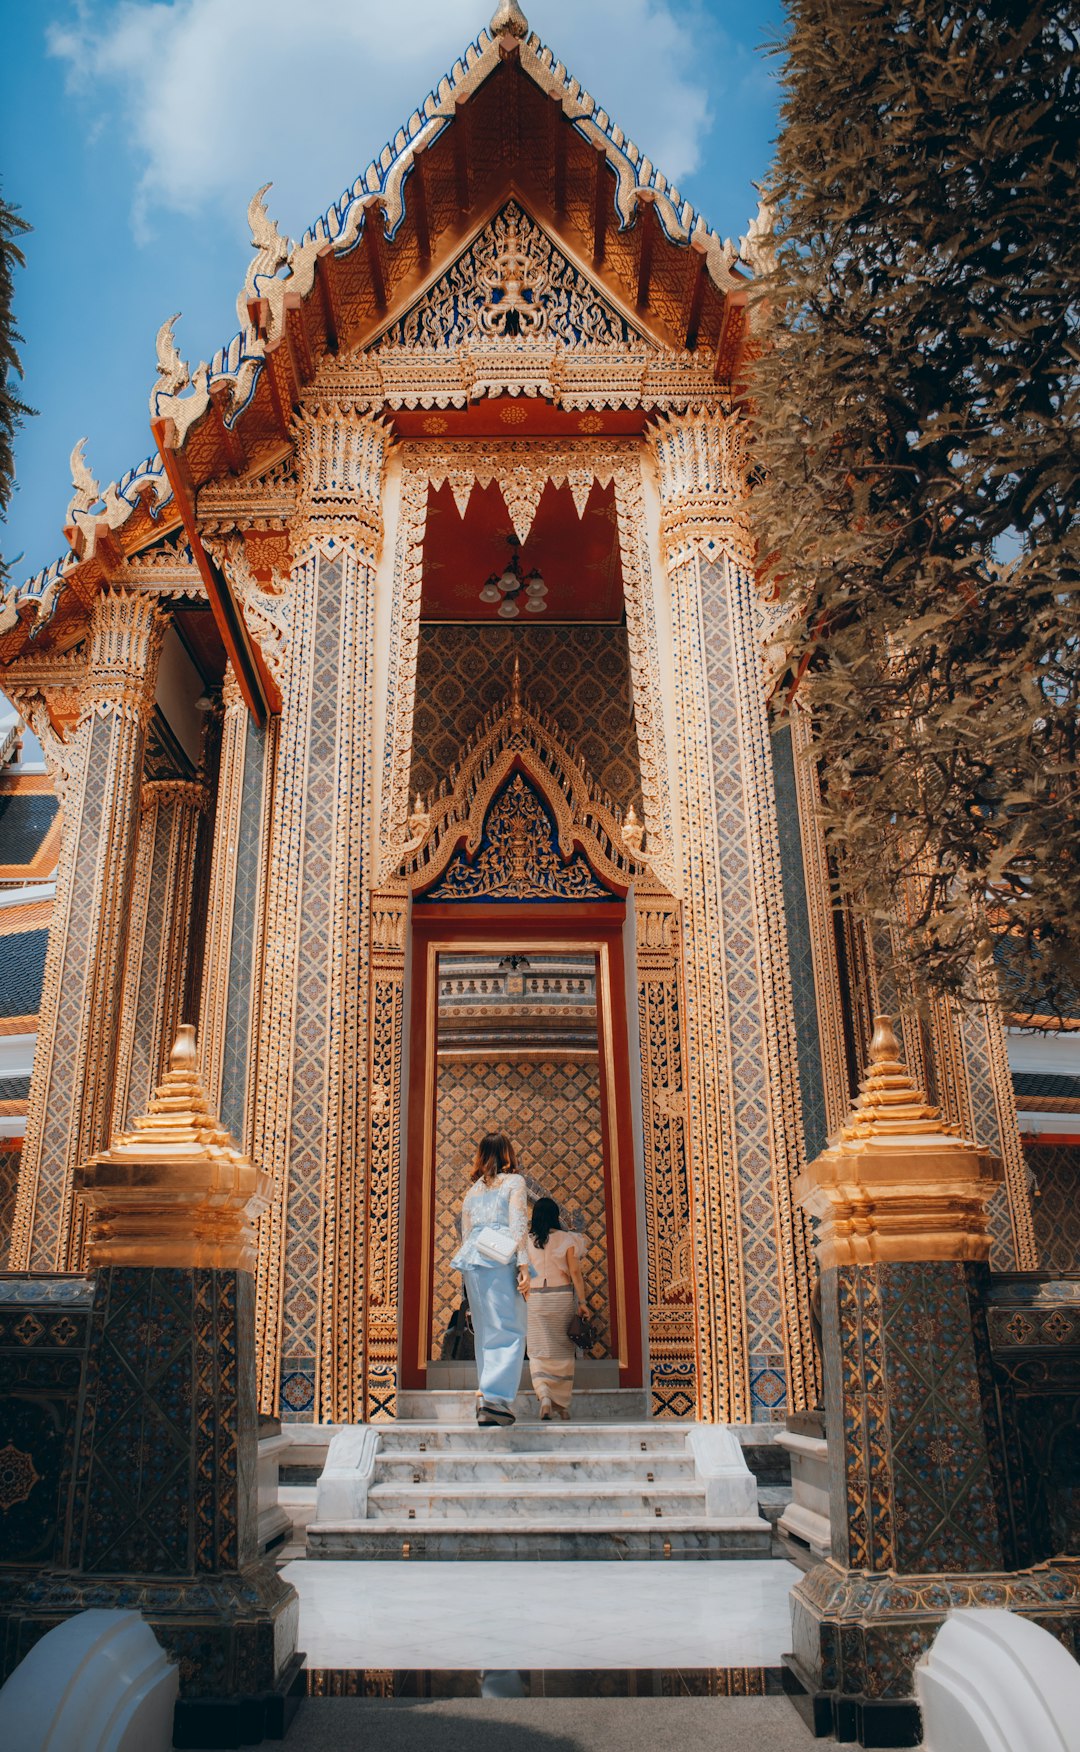 Place of worship photo spot Bangkok Wat Arun Ratchawararam Ratchawaramahawihan